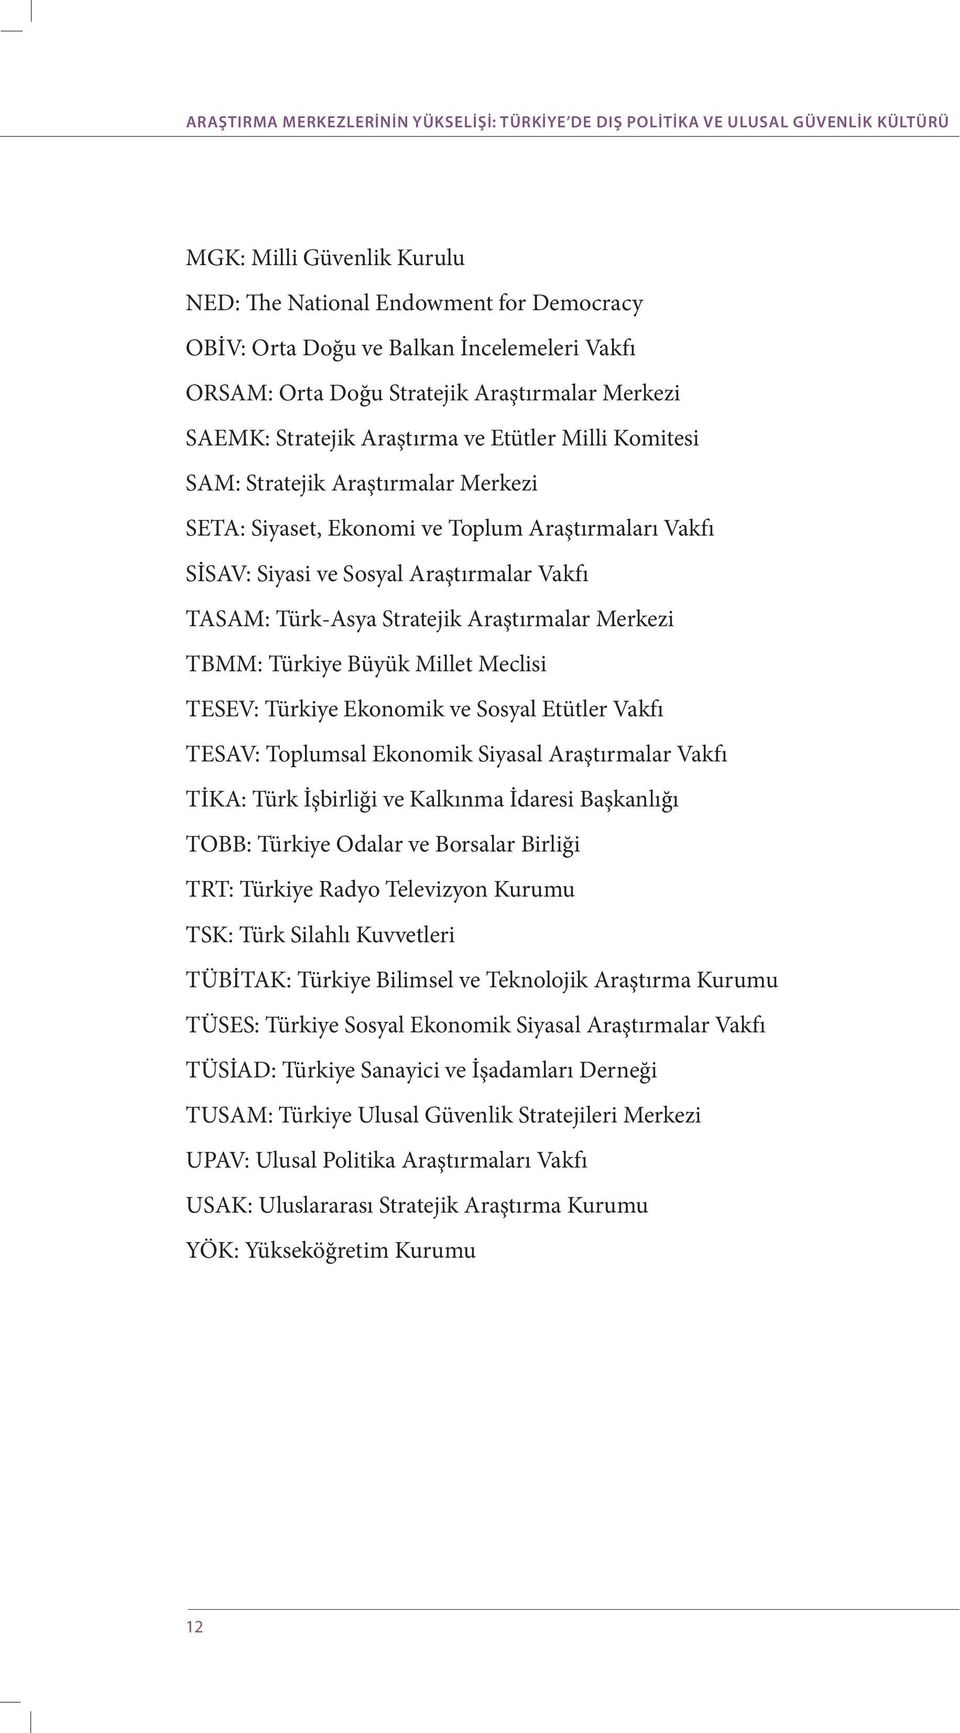 Siyasi ve Sosyal Araştırmalar Vakfı TASAM: Türk-Asya Stratejik Araştırmalar Merkezi TBMM: Türkiye Büyük Millet Meclisi TESEV: Türkiye Ekonomik ve Sosyal Etütler Vakfı TESAV: Toplumsal Ekonomik